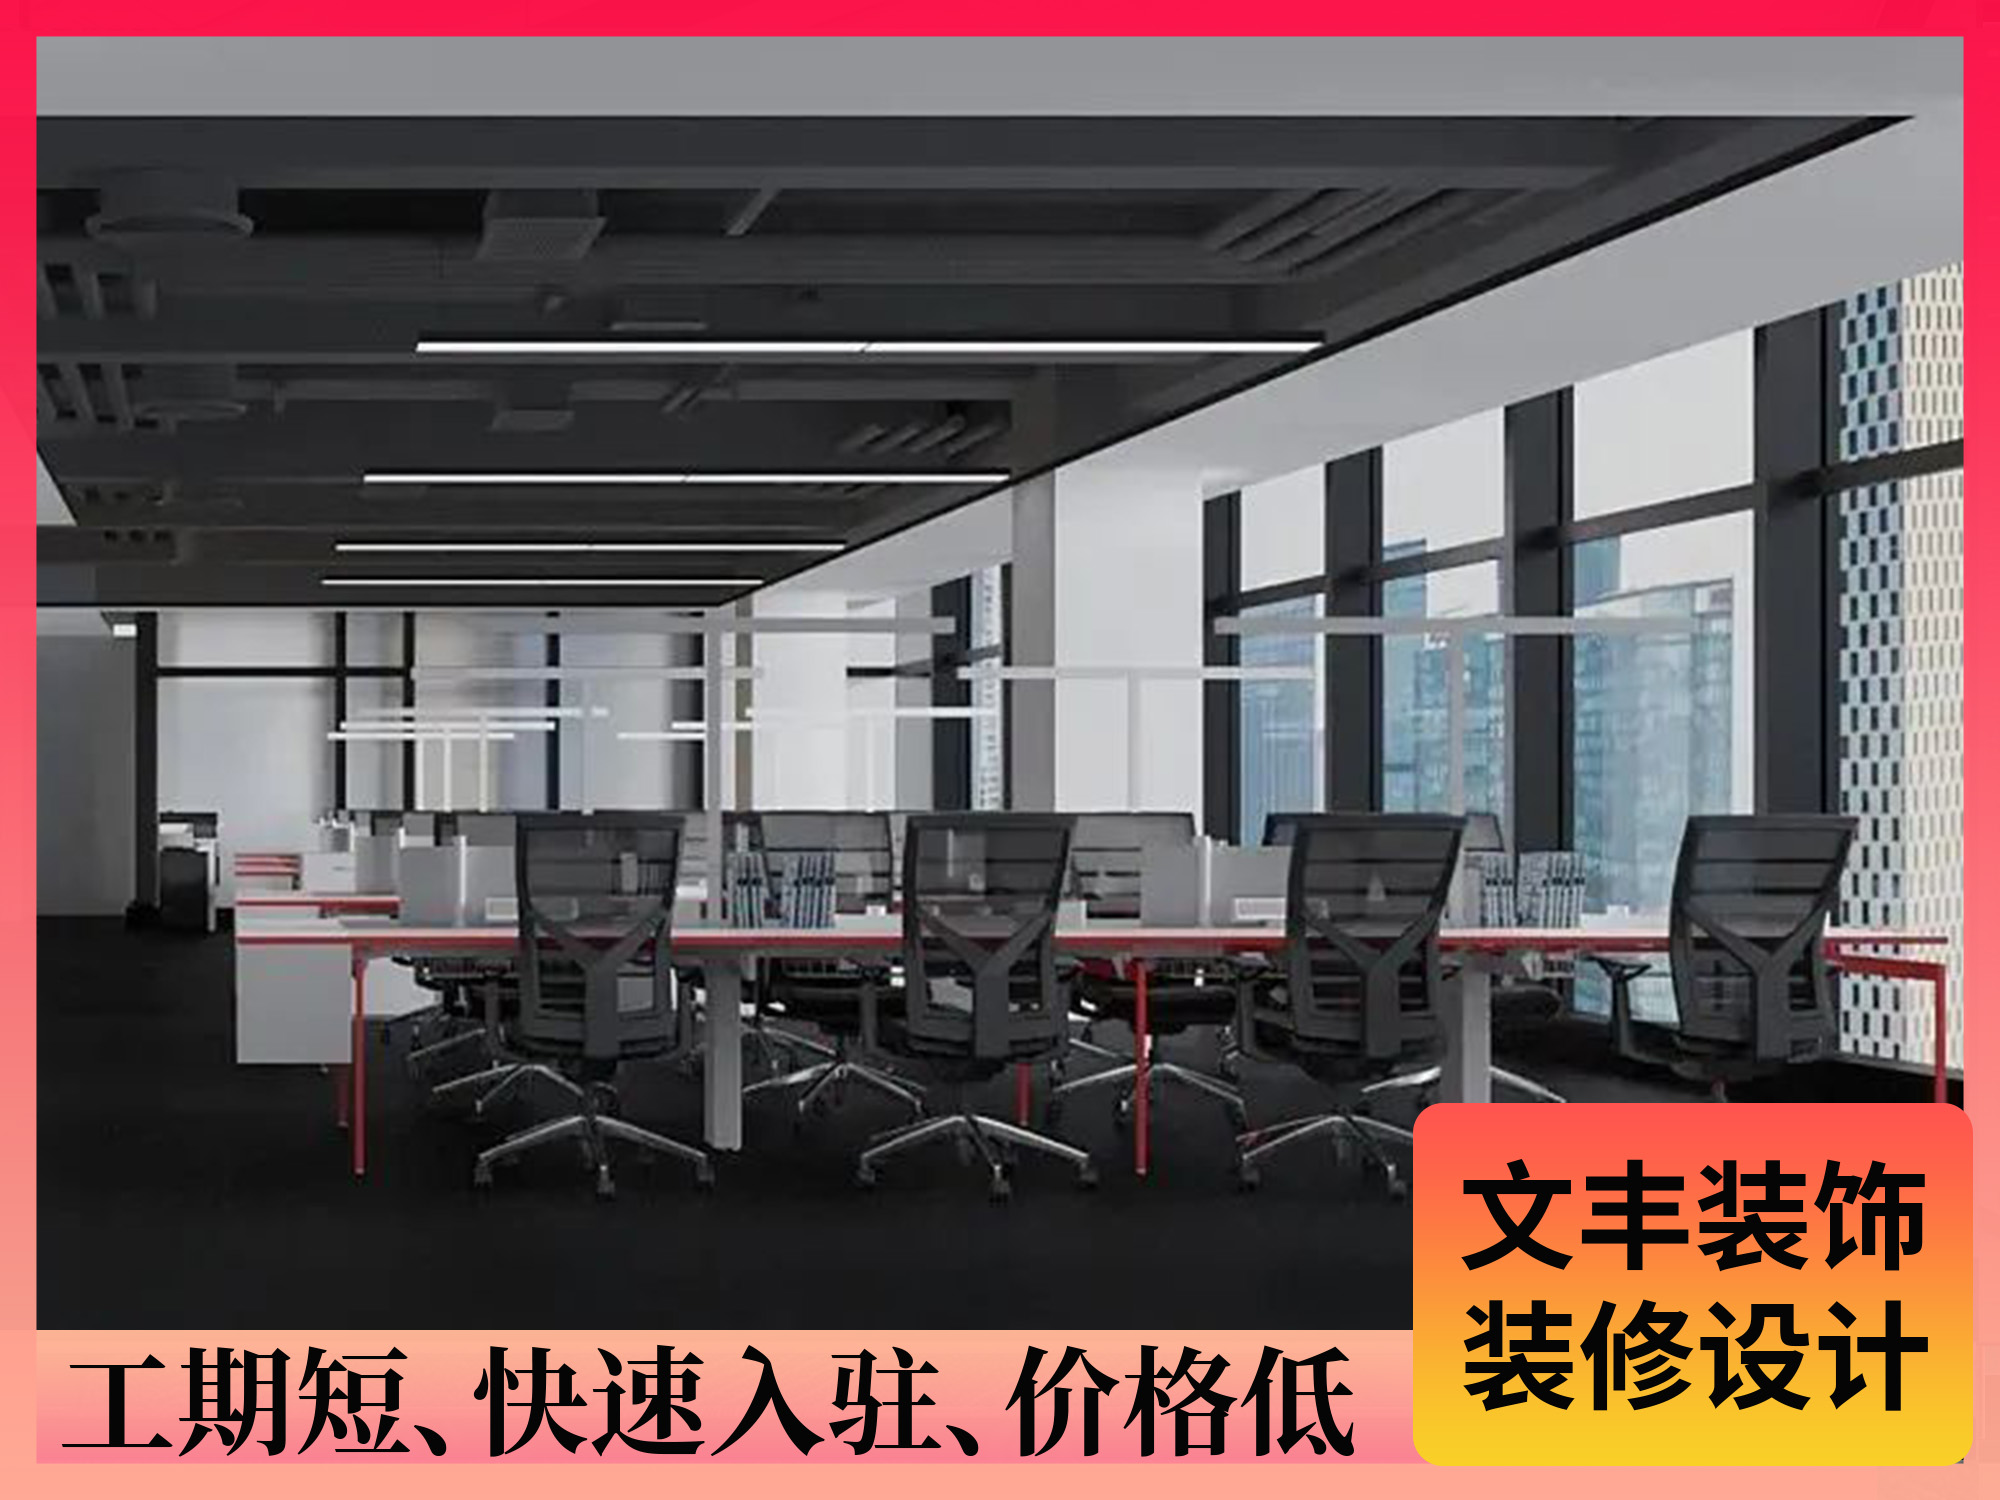 【合续科技】南山办公室装修效果图-现代风-文丰装饰公司